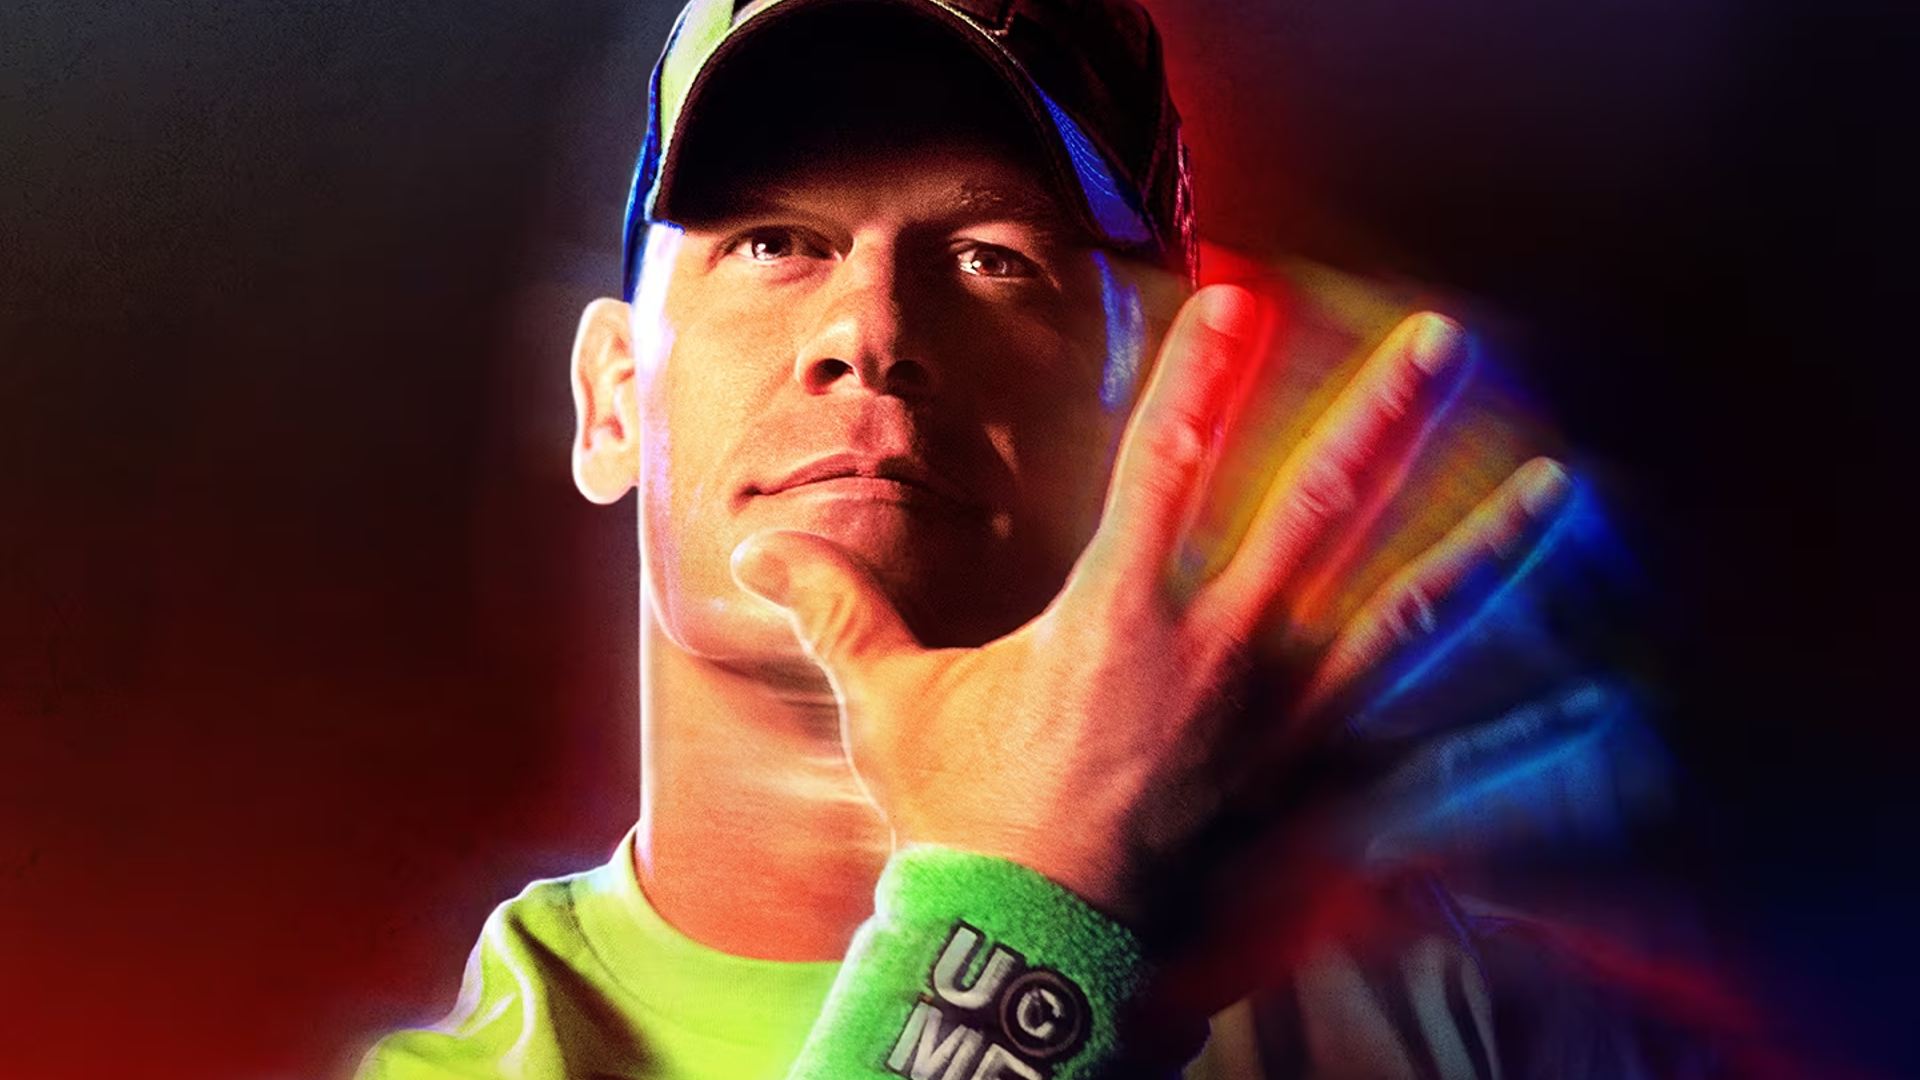 Los mejores juegos deportivos: se puede ver a John Cena